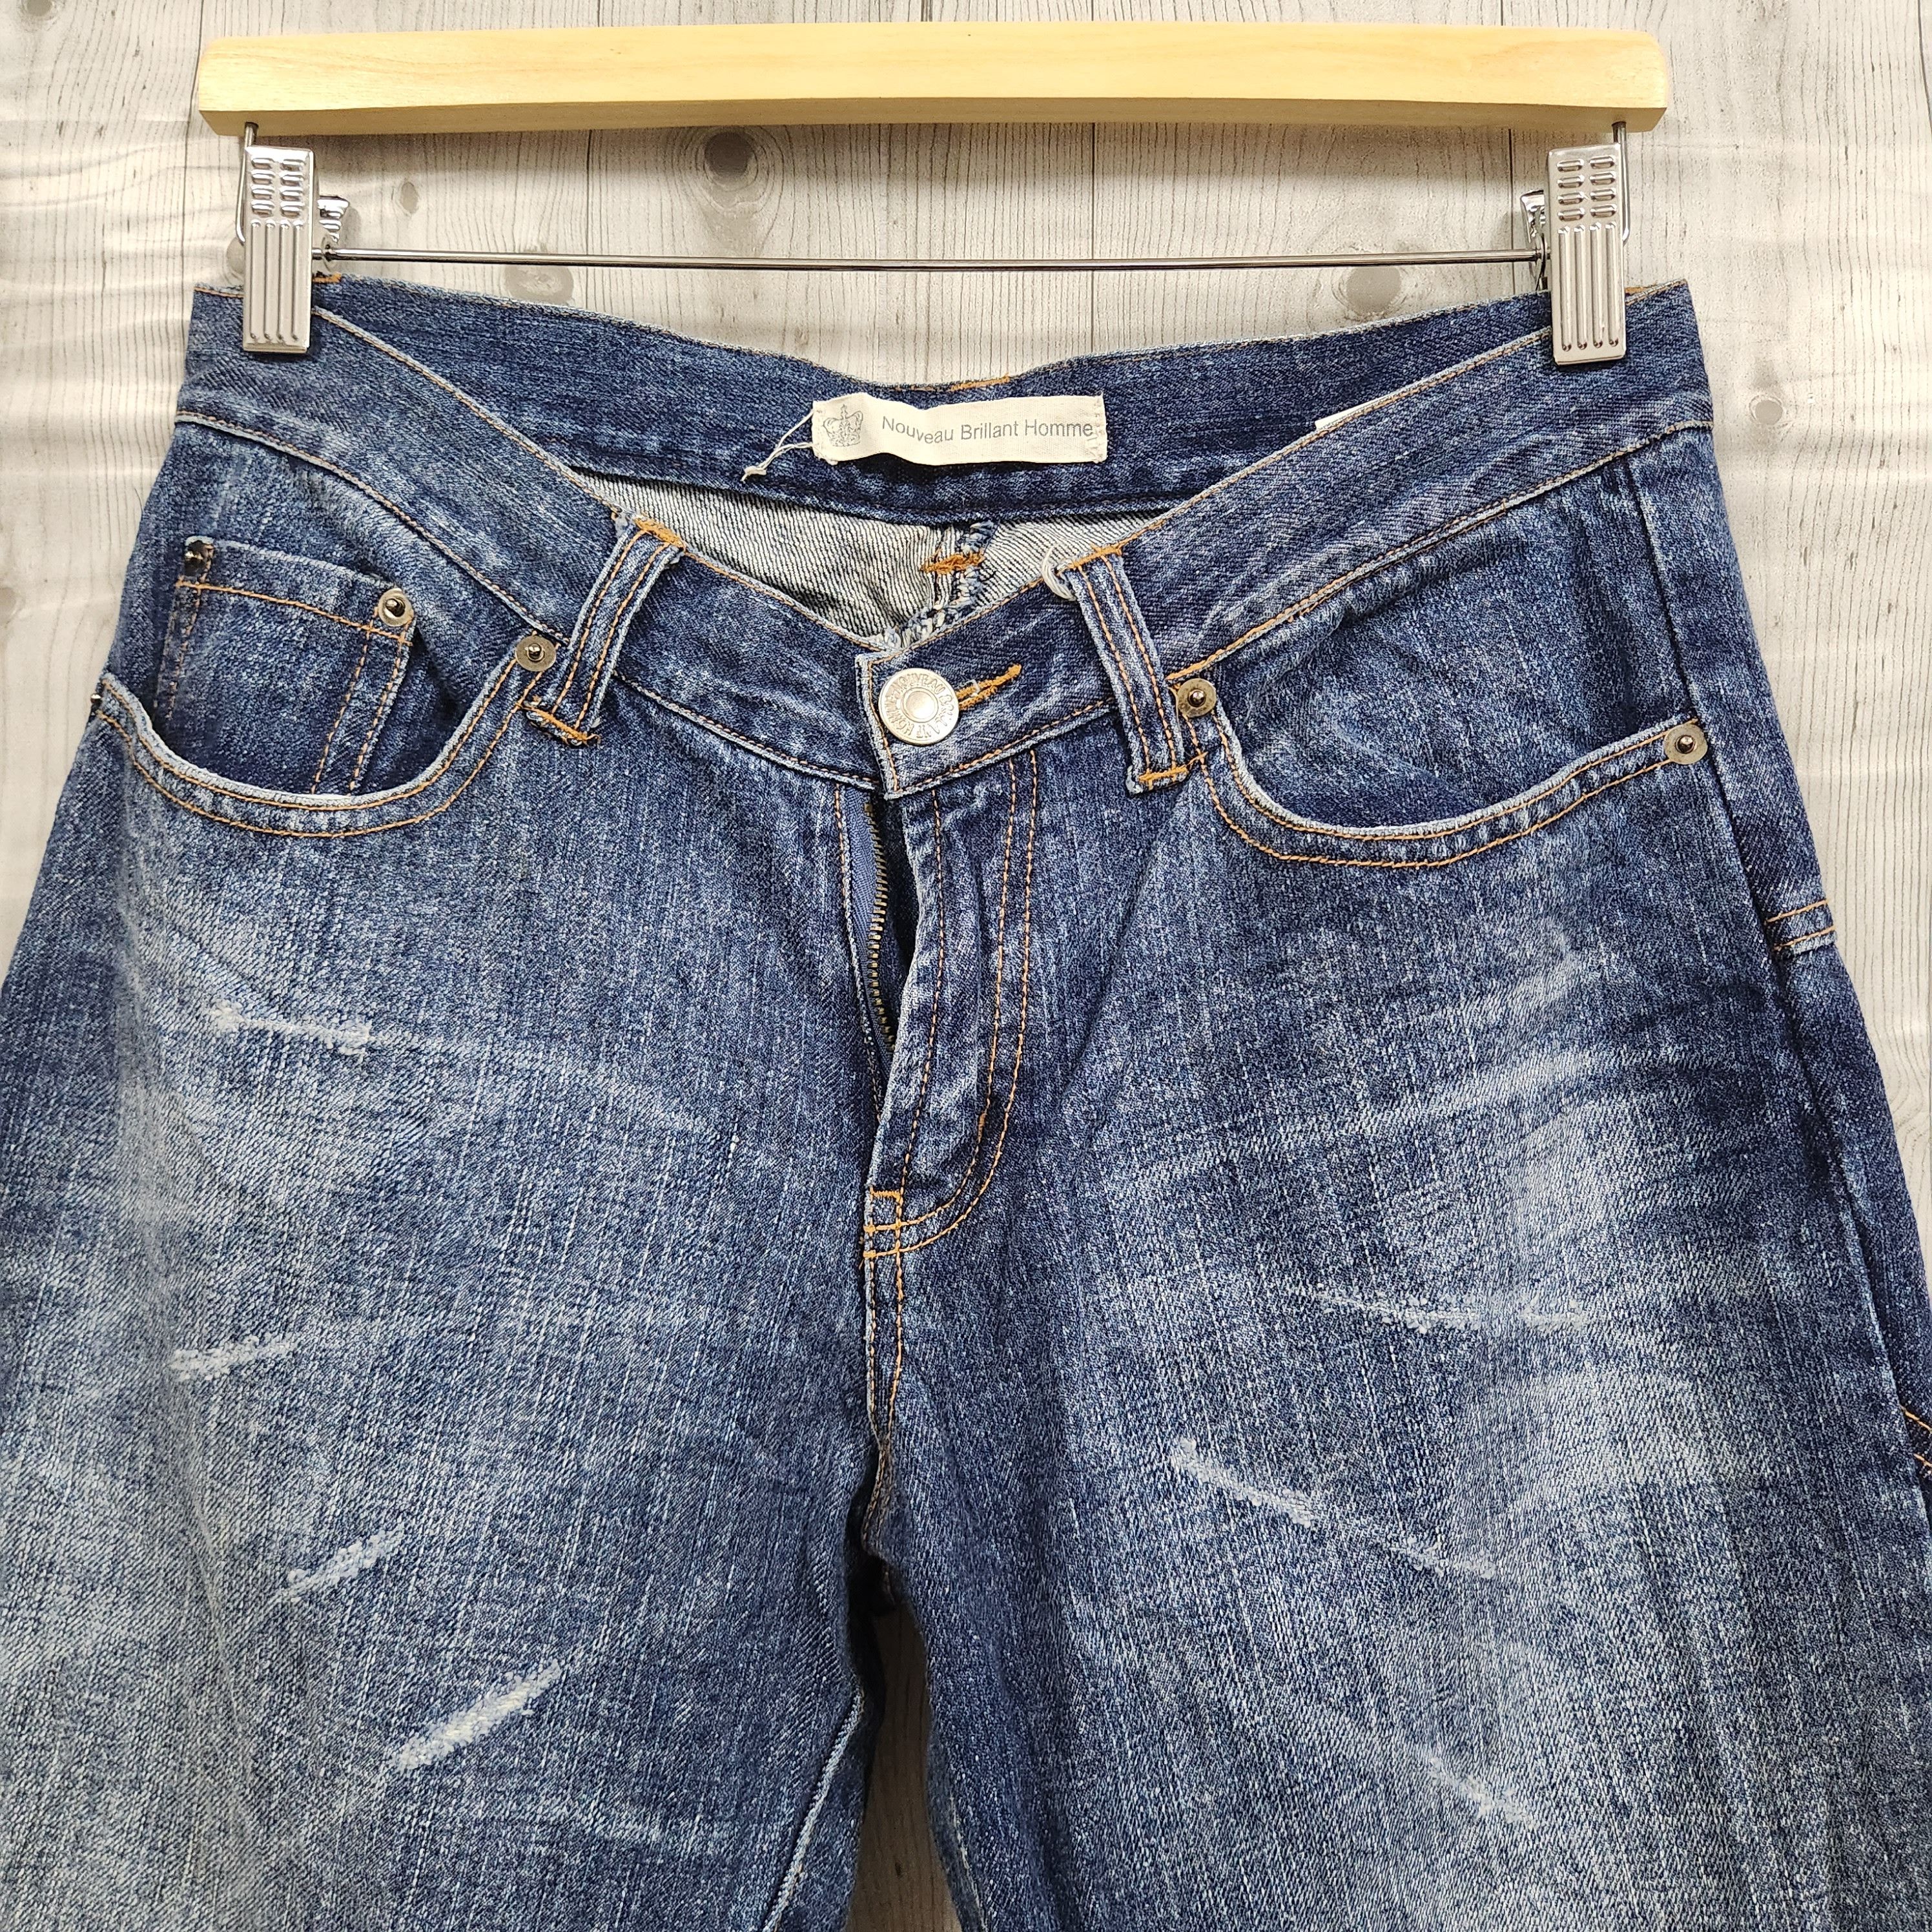 If Six Was Nine - Flare Nouveau Brillant Homme Japan Denim Pockets Jeans - 2